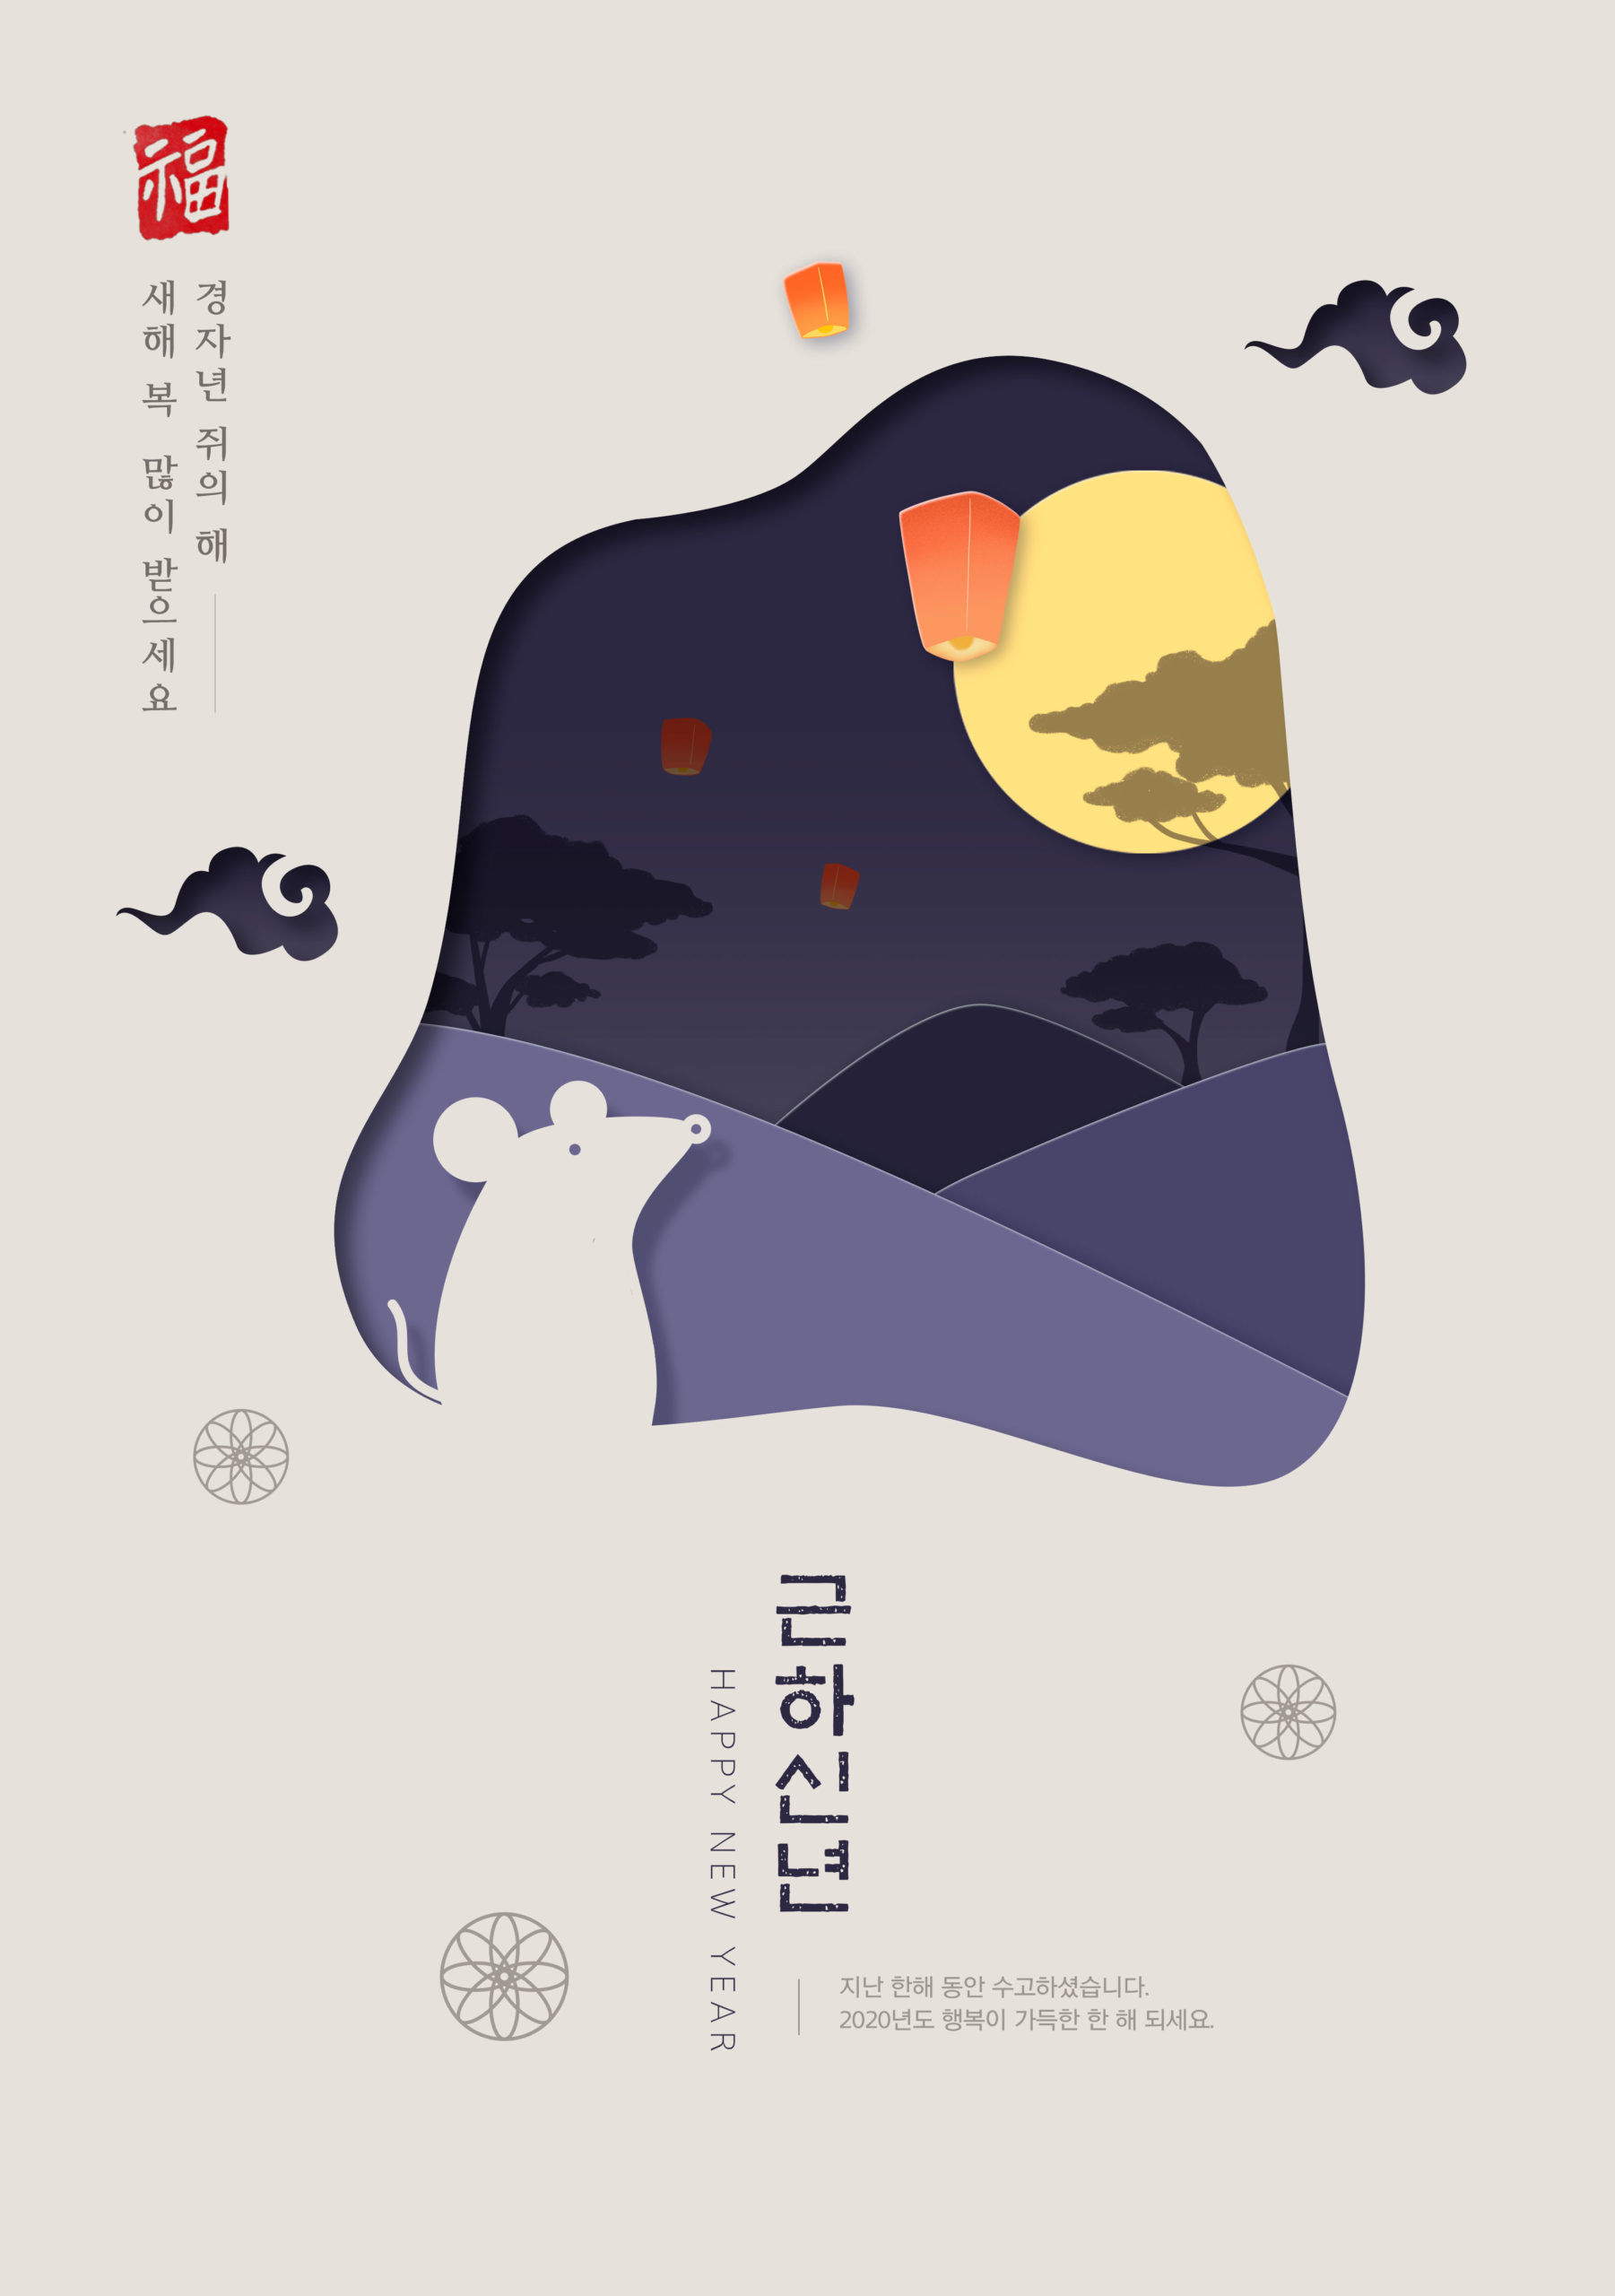 鼠年新春主题韩国海报PSD素材第一素材精选模板插图